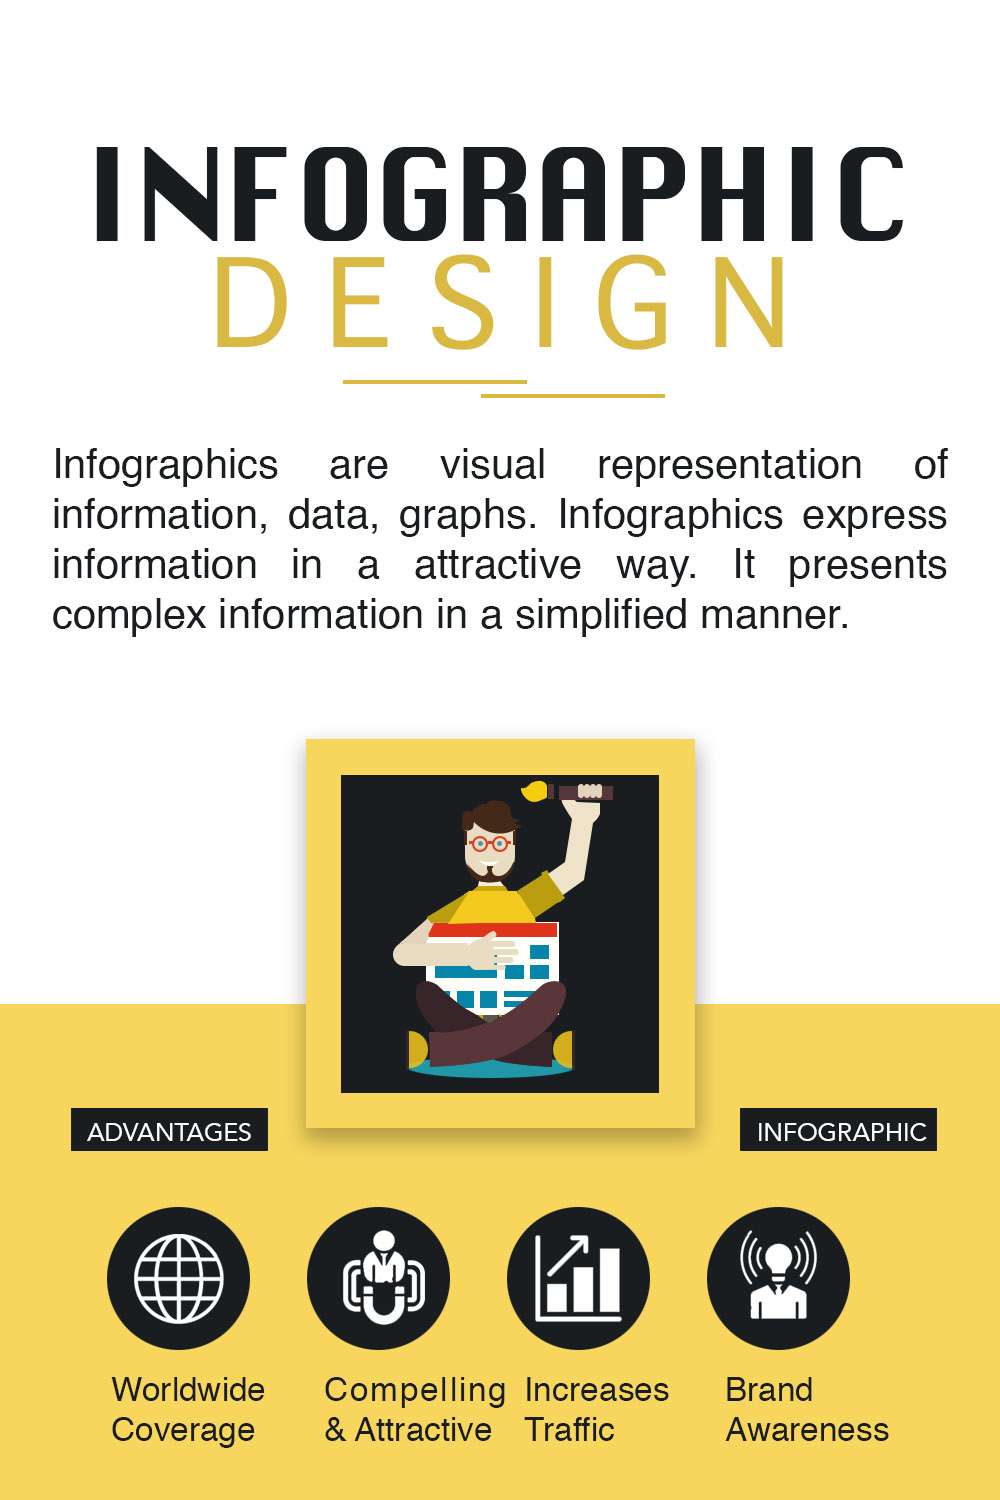 infographic design service in rohini